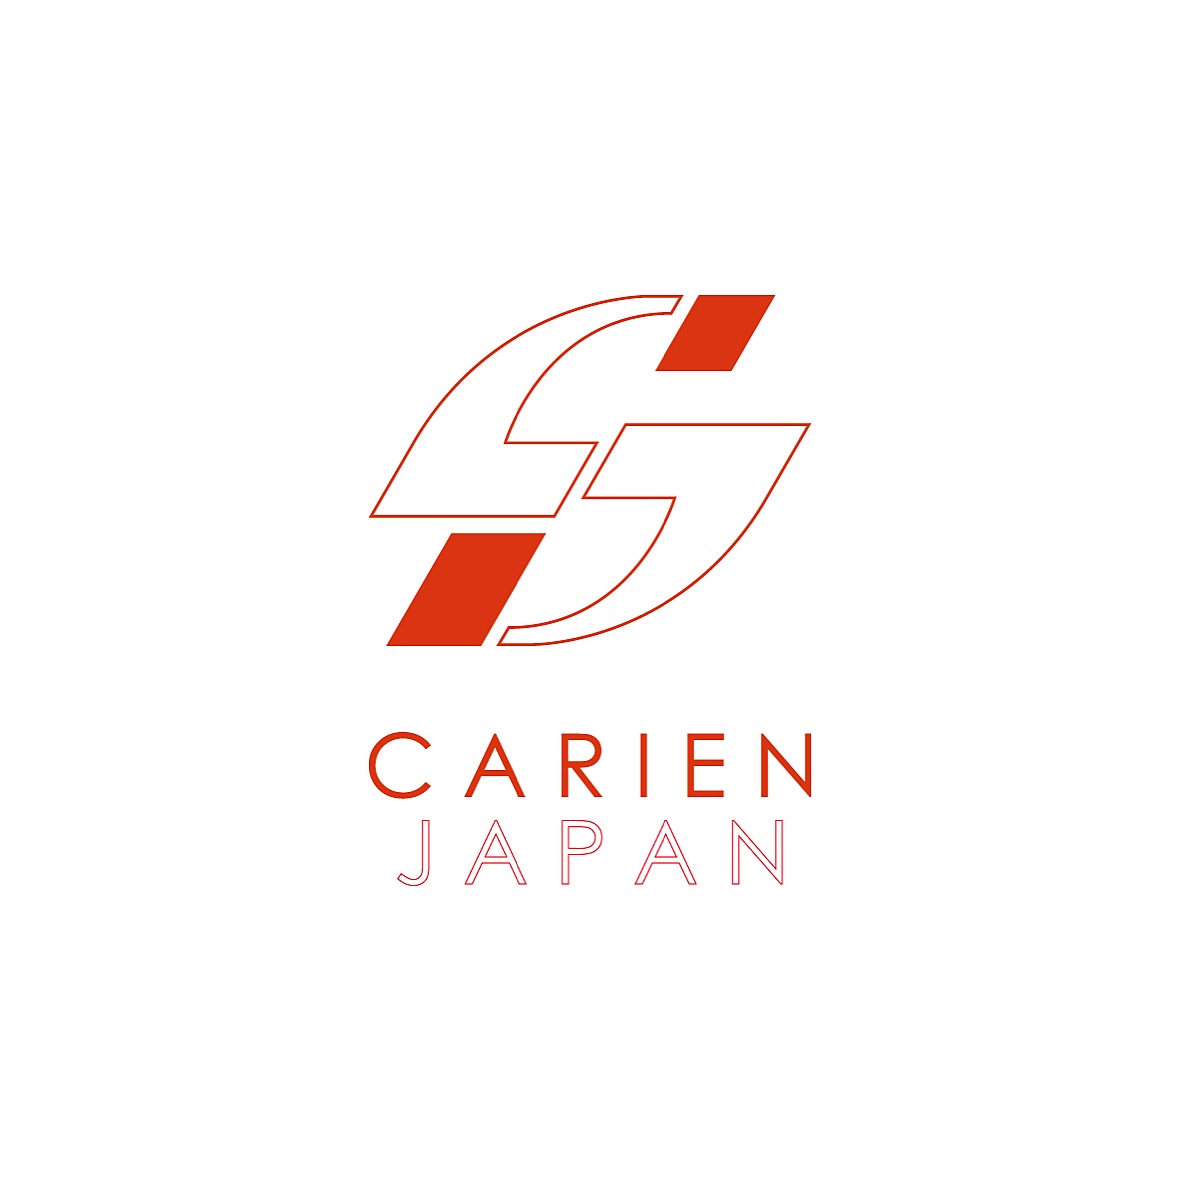 CARIEN JAPAN